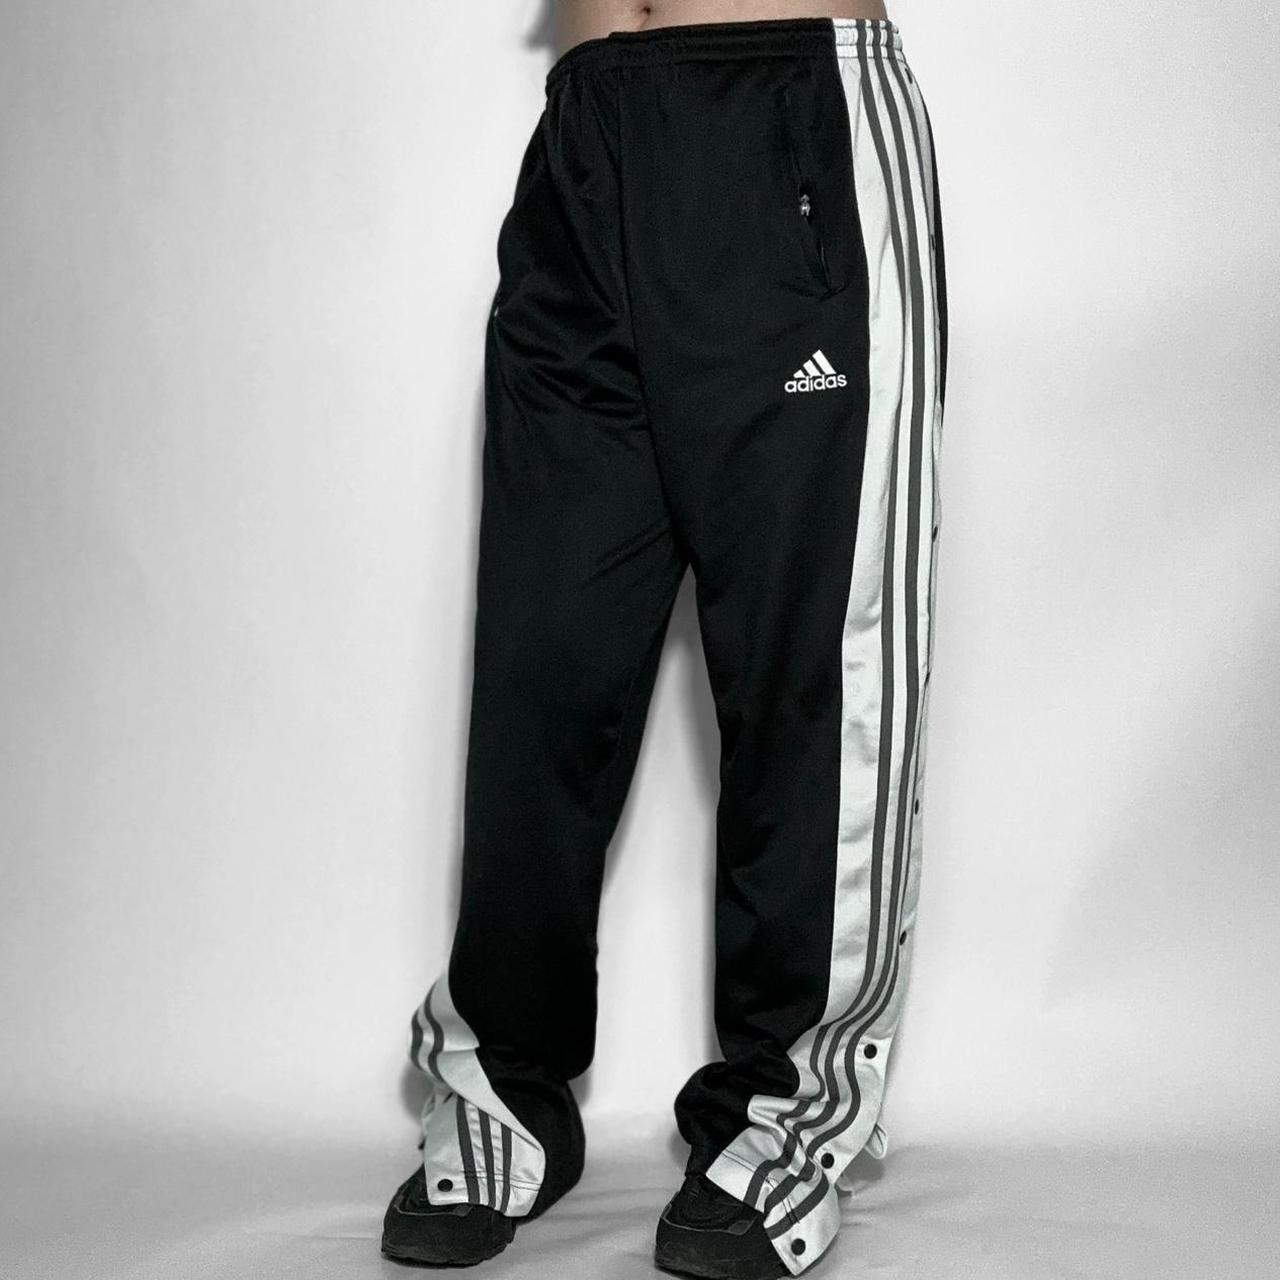 Adidas Track Pants Macys Deals - www.asdonline.co.uk 1692665293